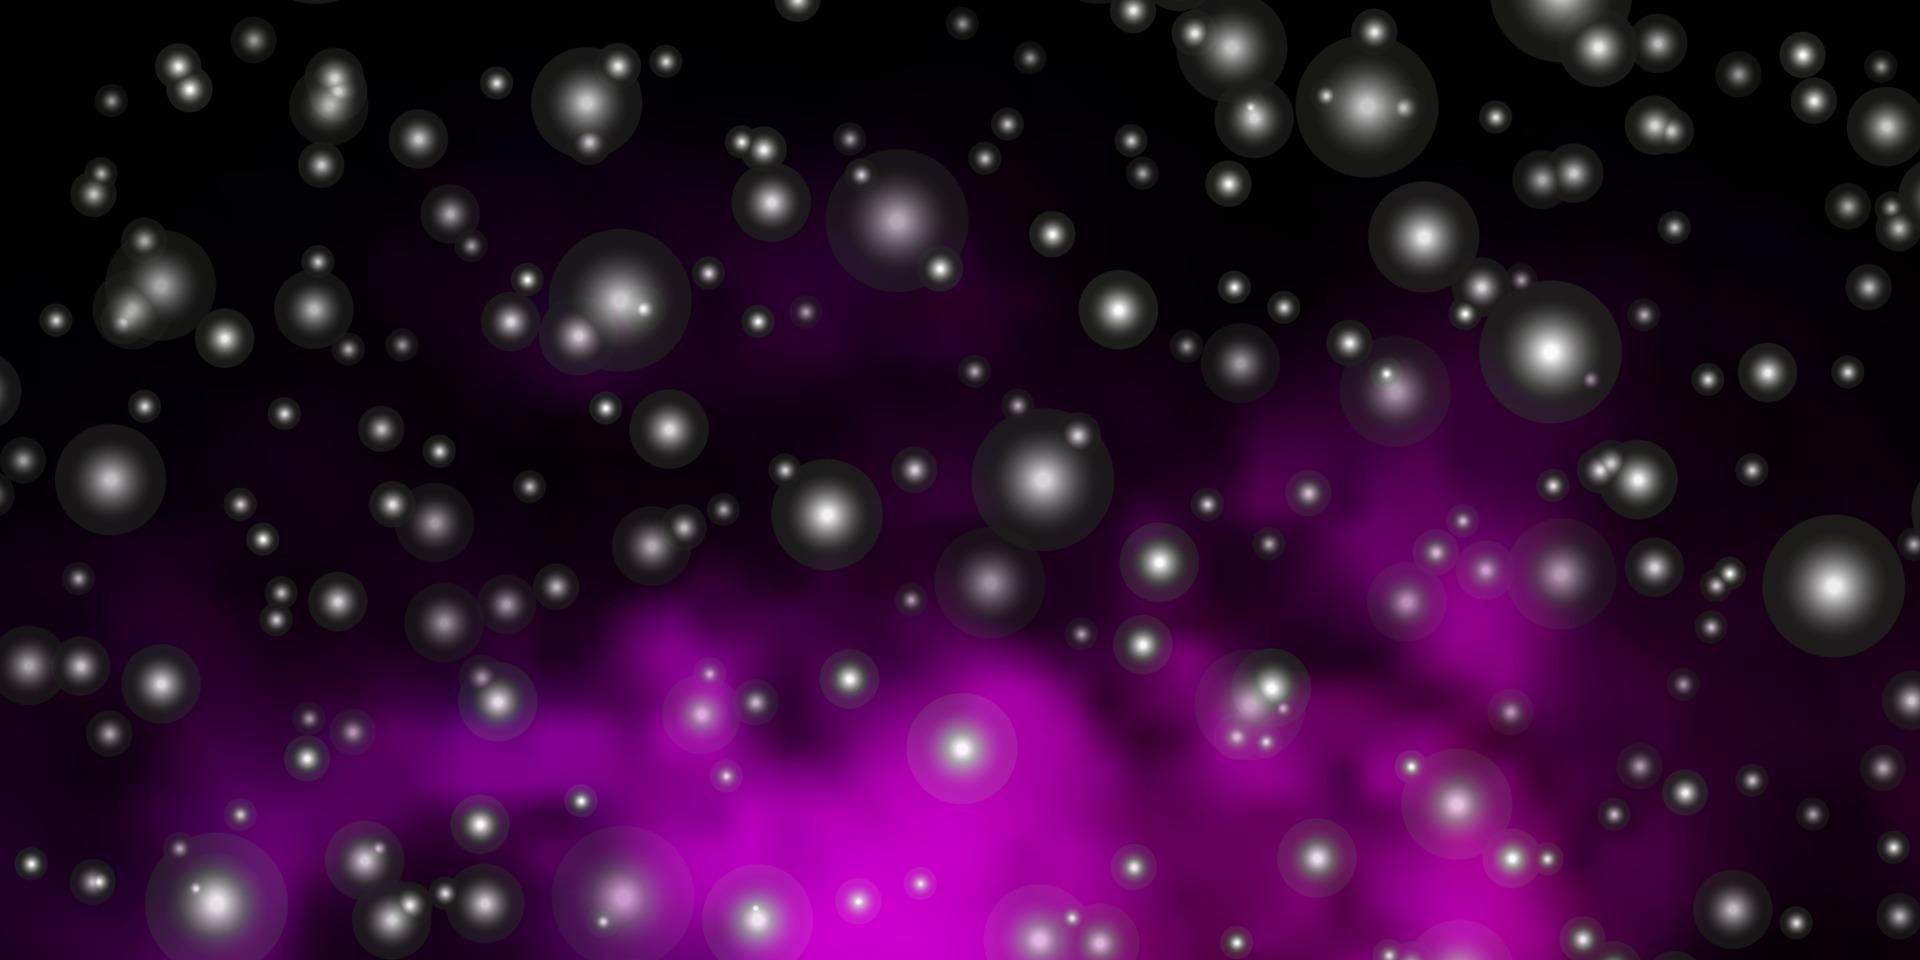 padrão de vetor roxo escuro com estrelas abstratas.